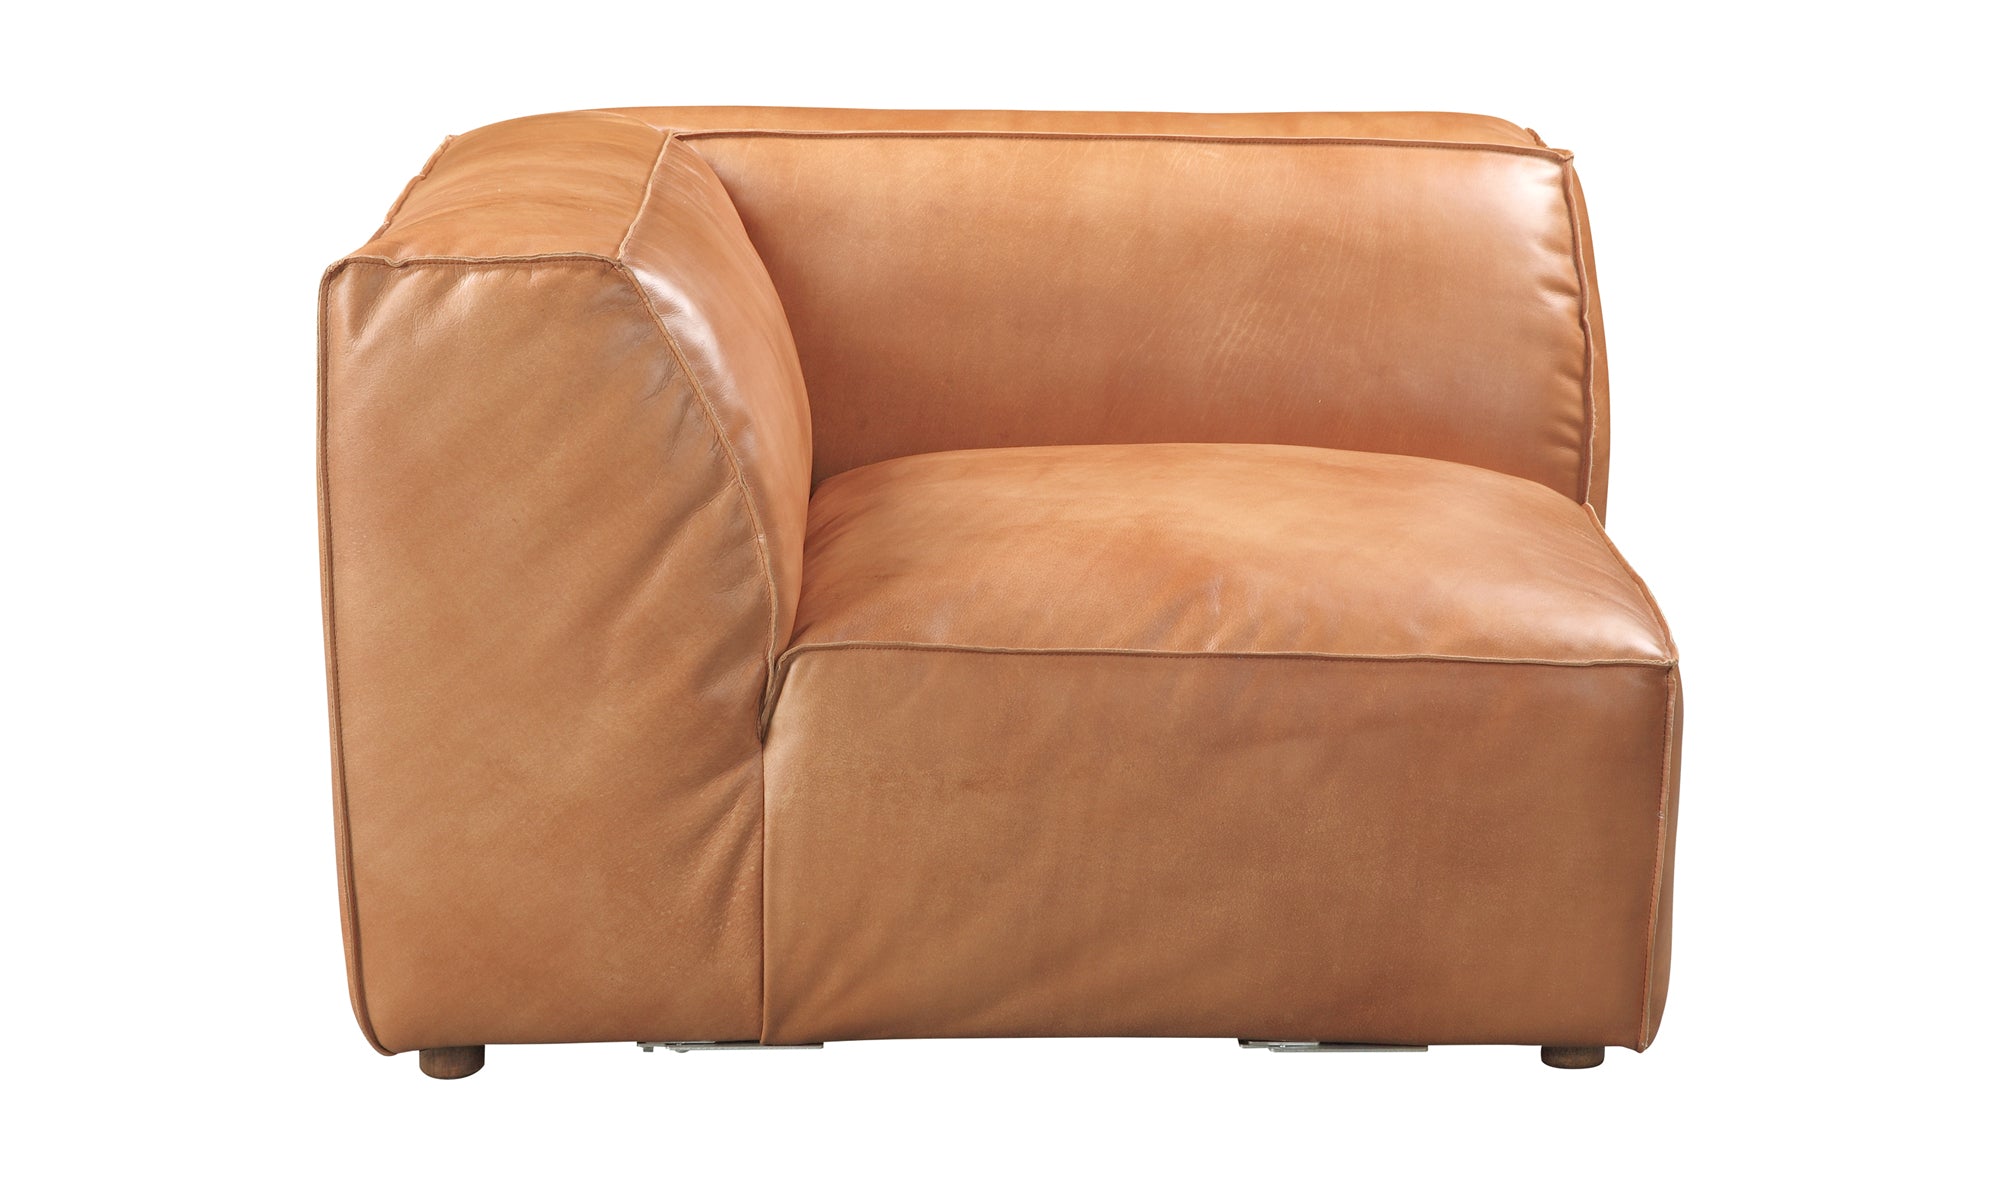 Luxe Corner Chair - Tan